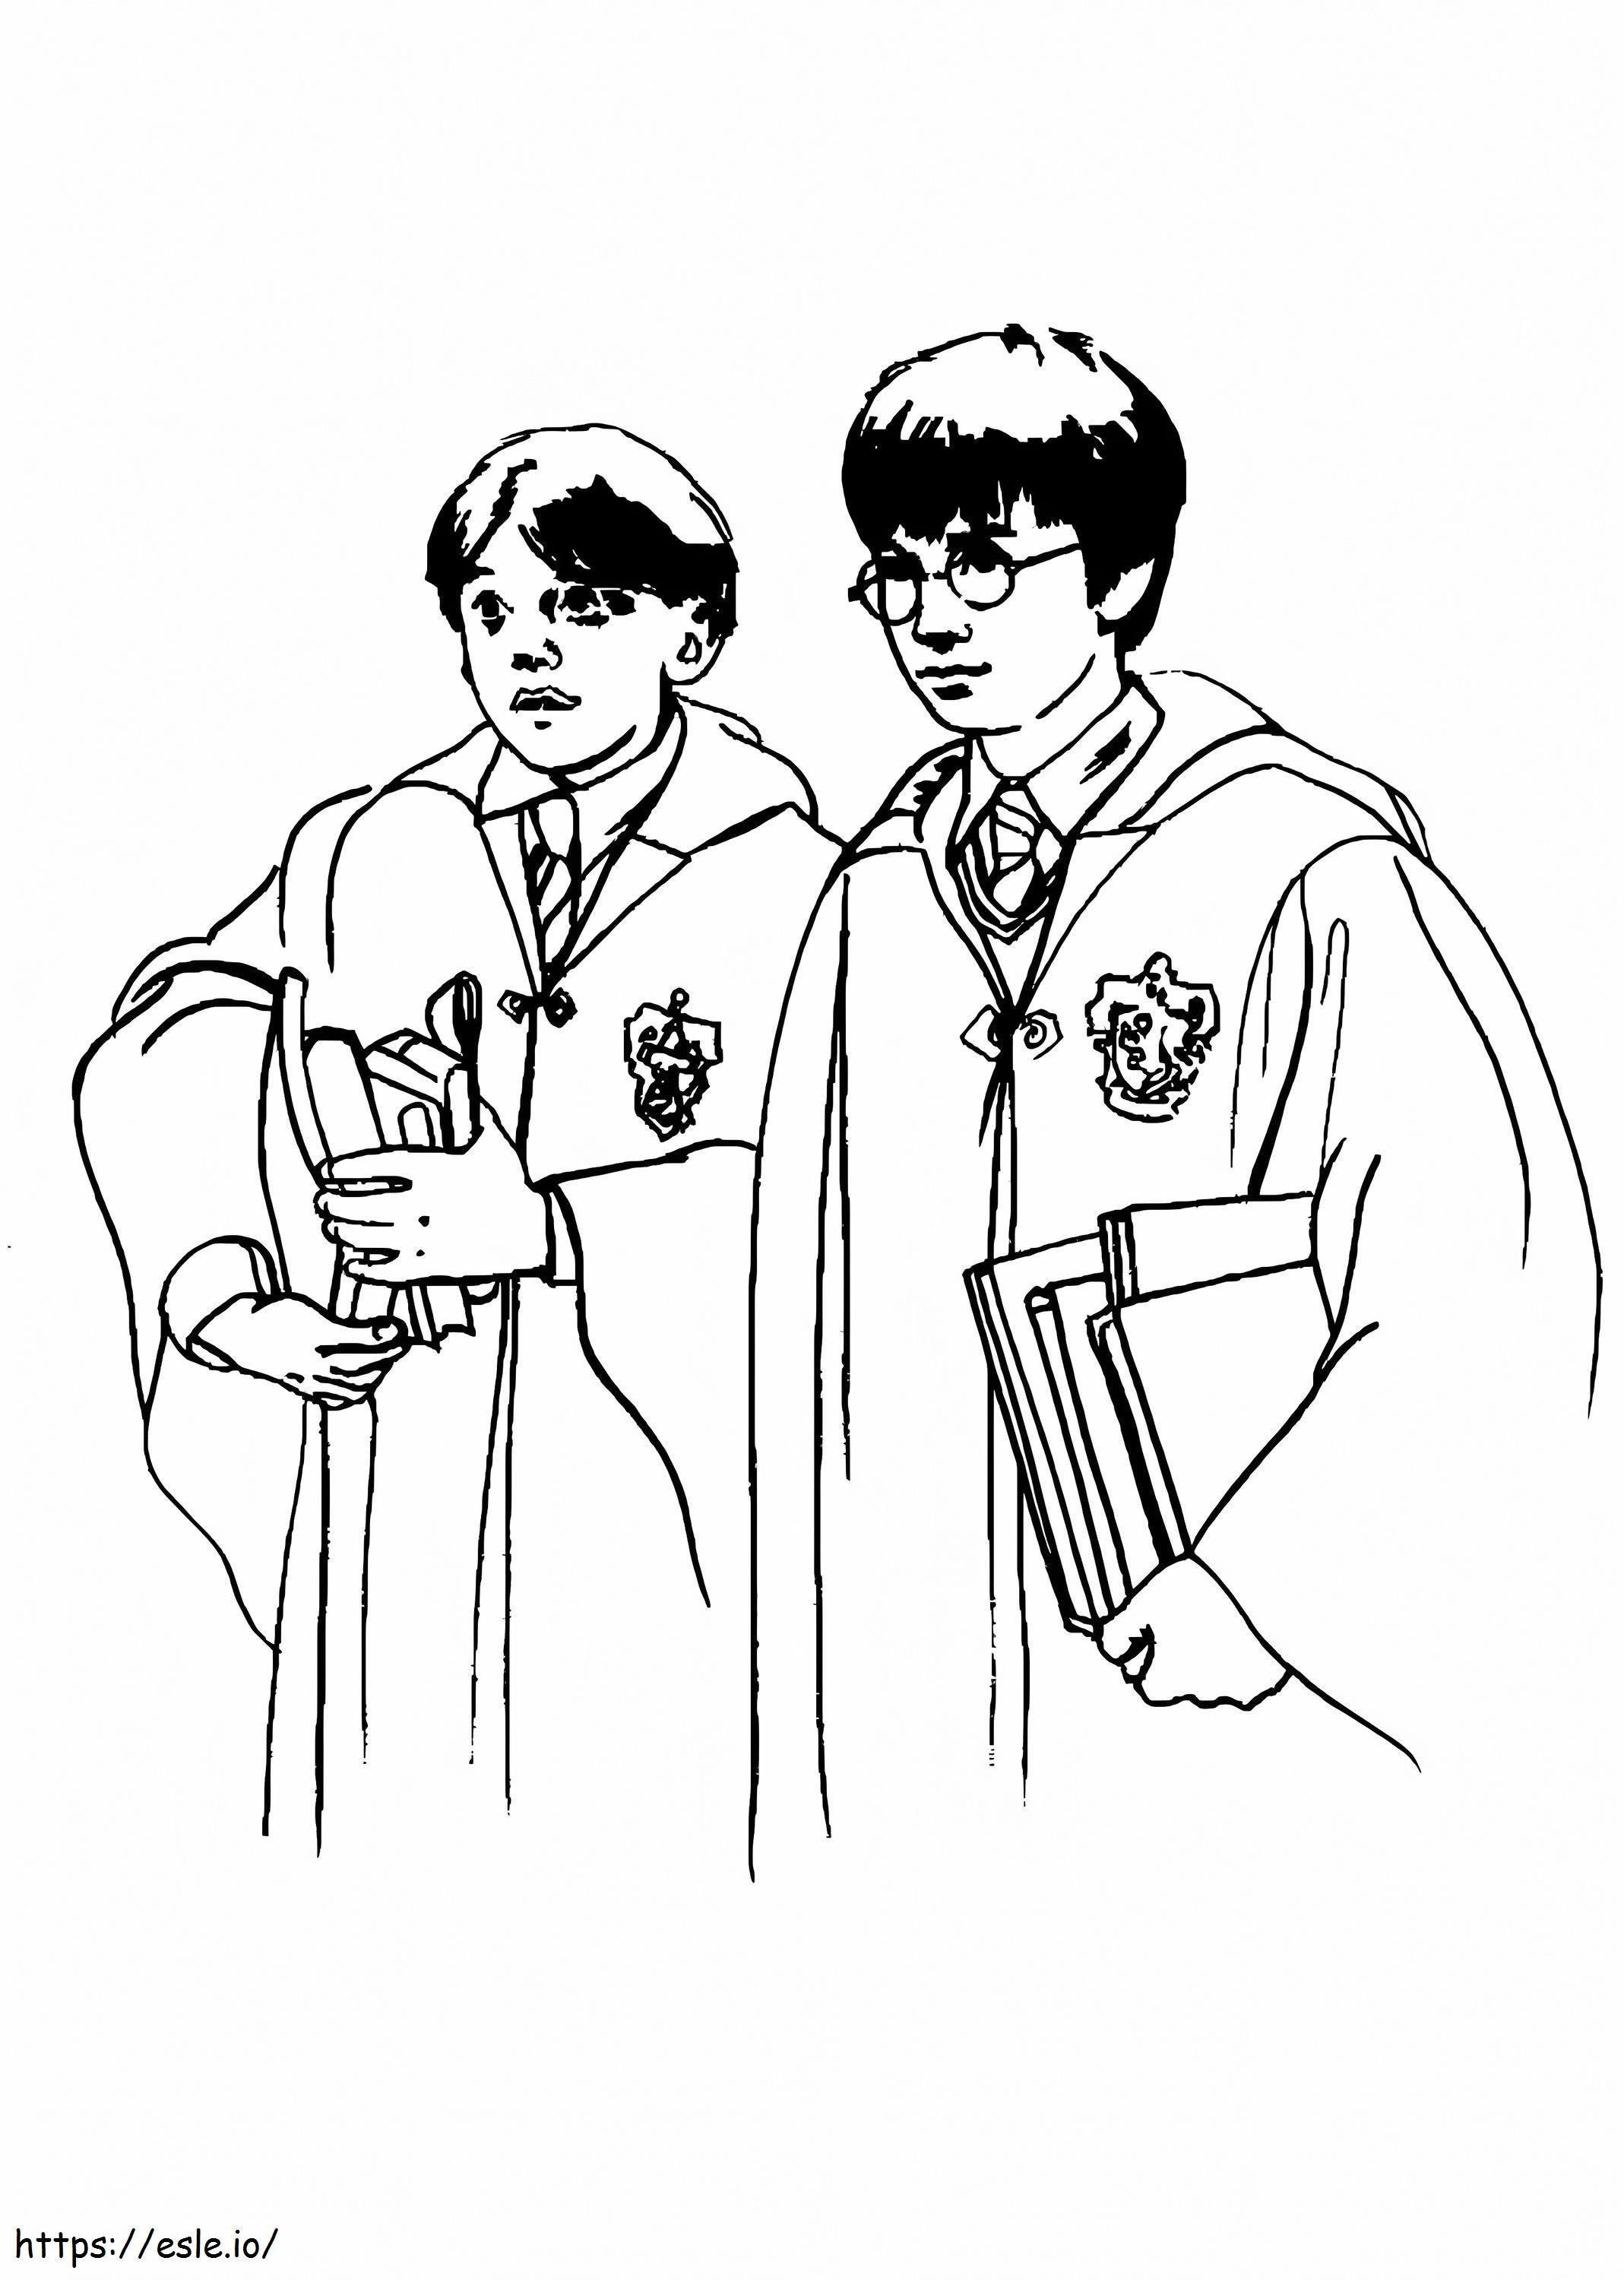 Harry și Ron de colorat